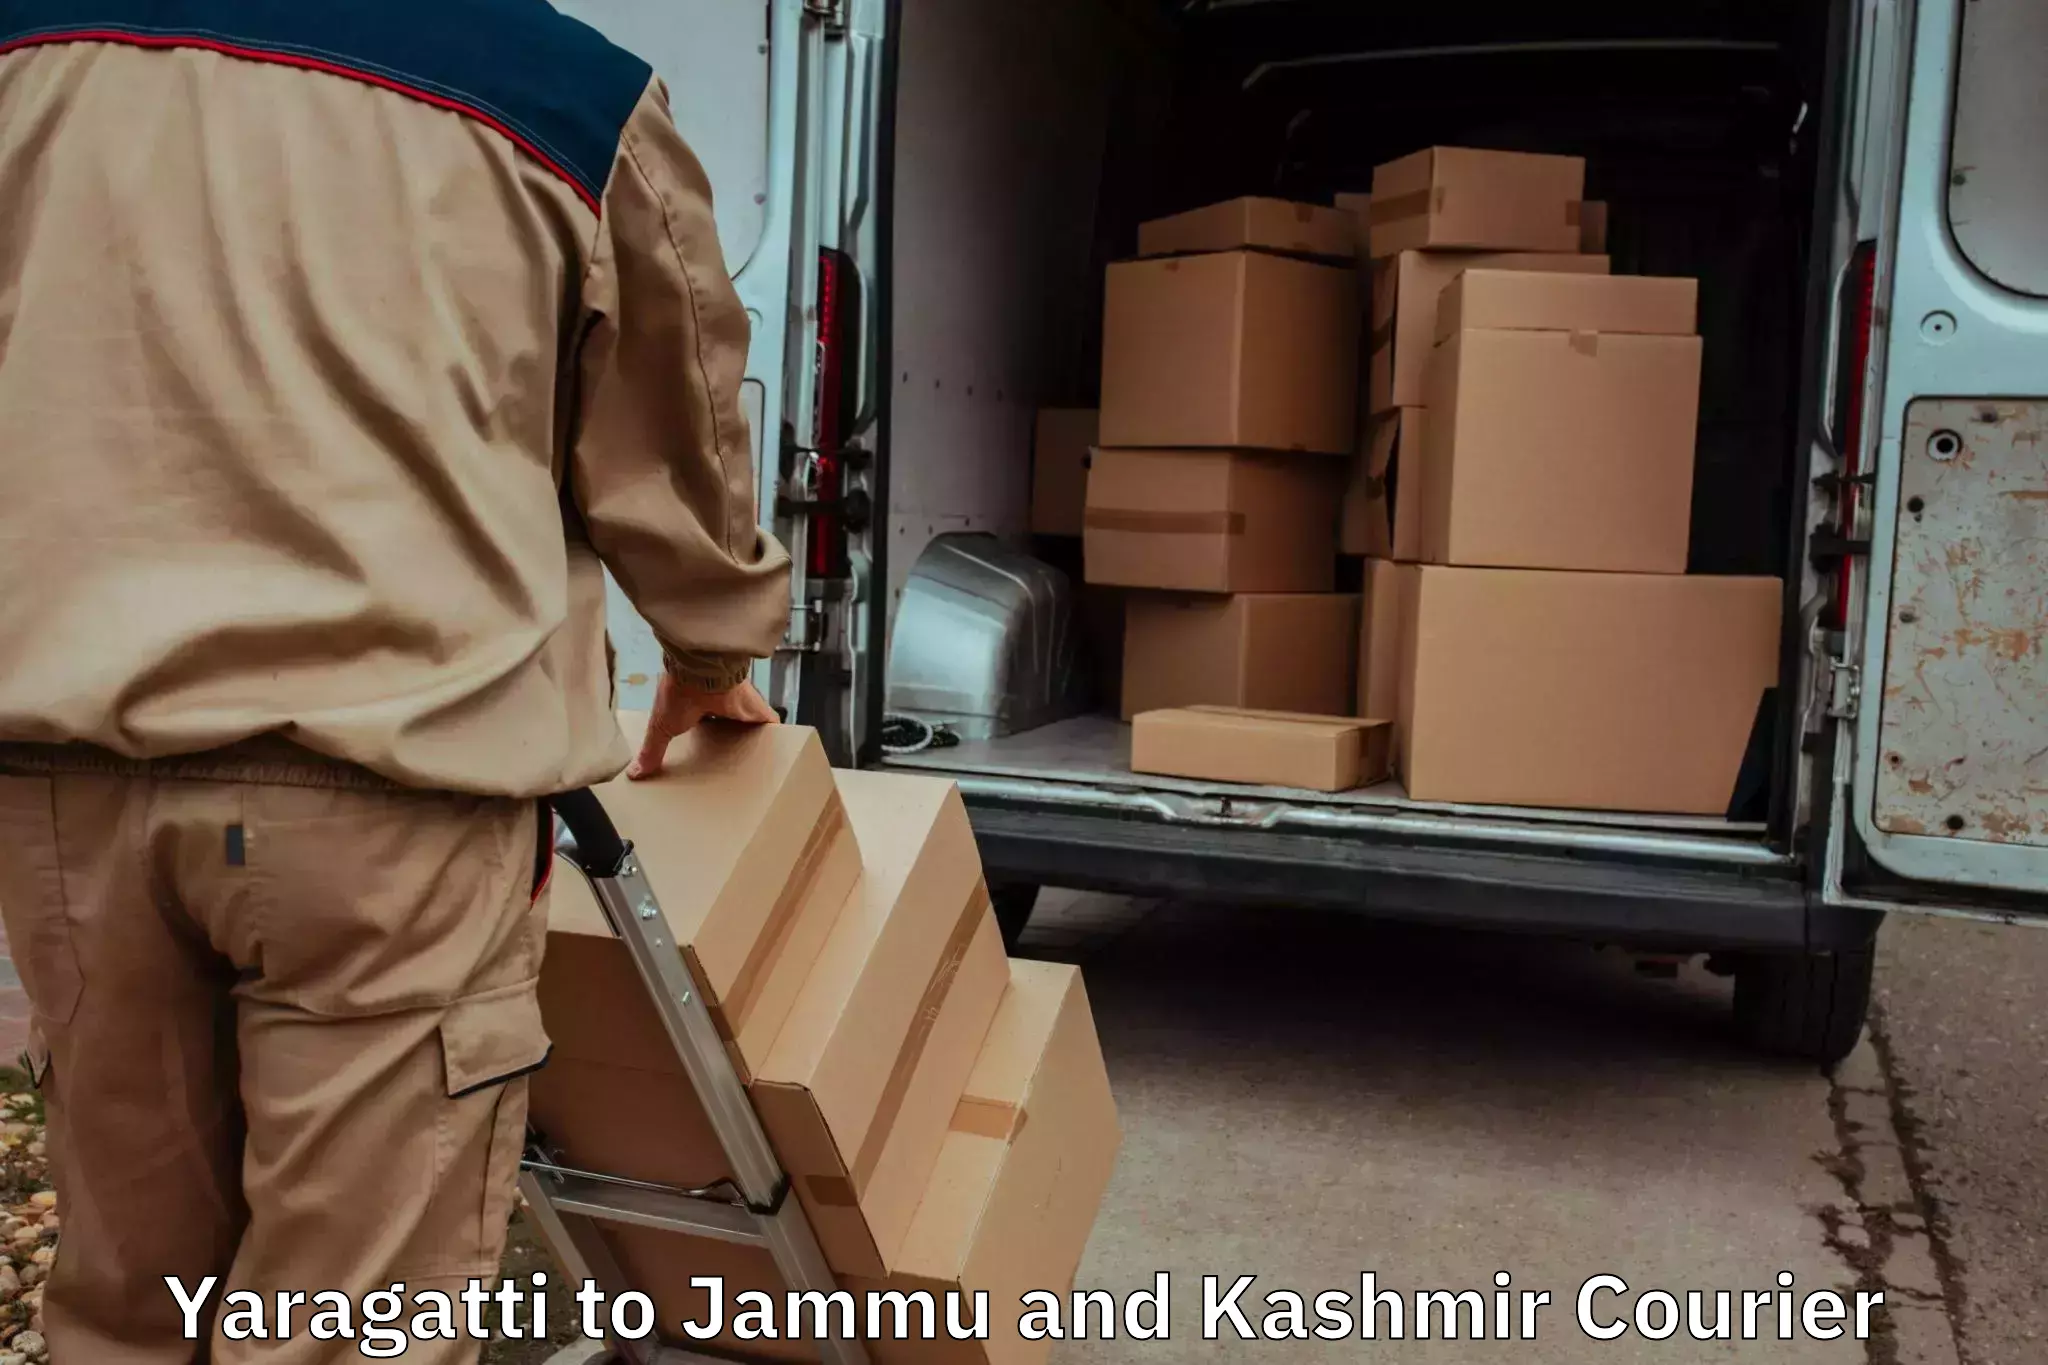 Seamless moving process Yaragatti to IIT Jammu